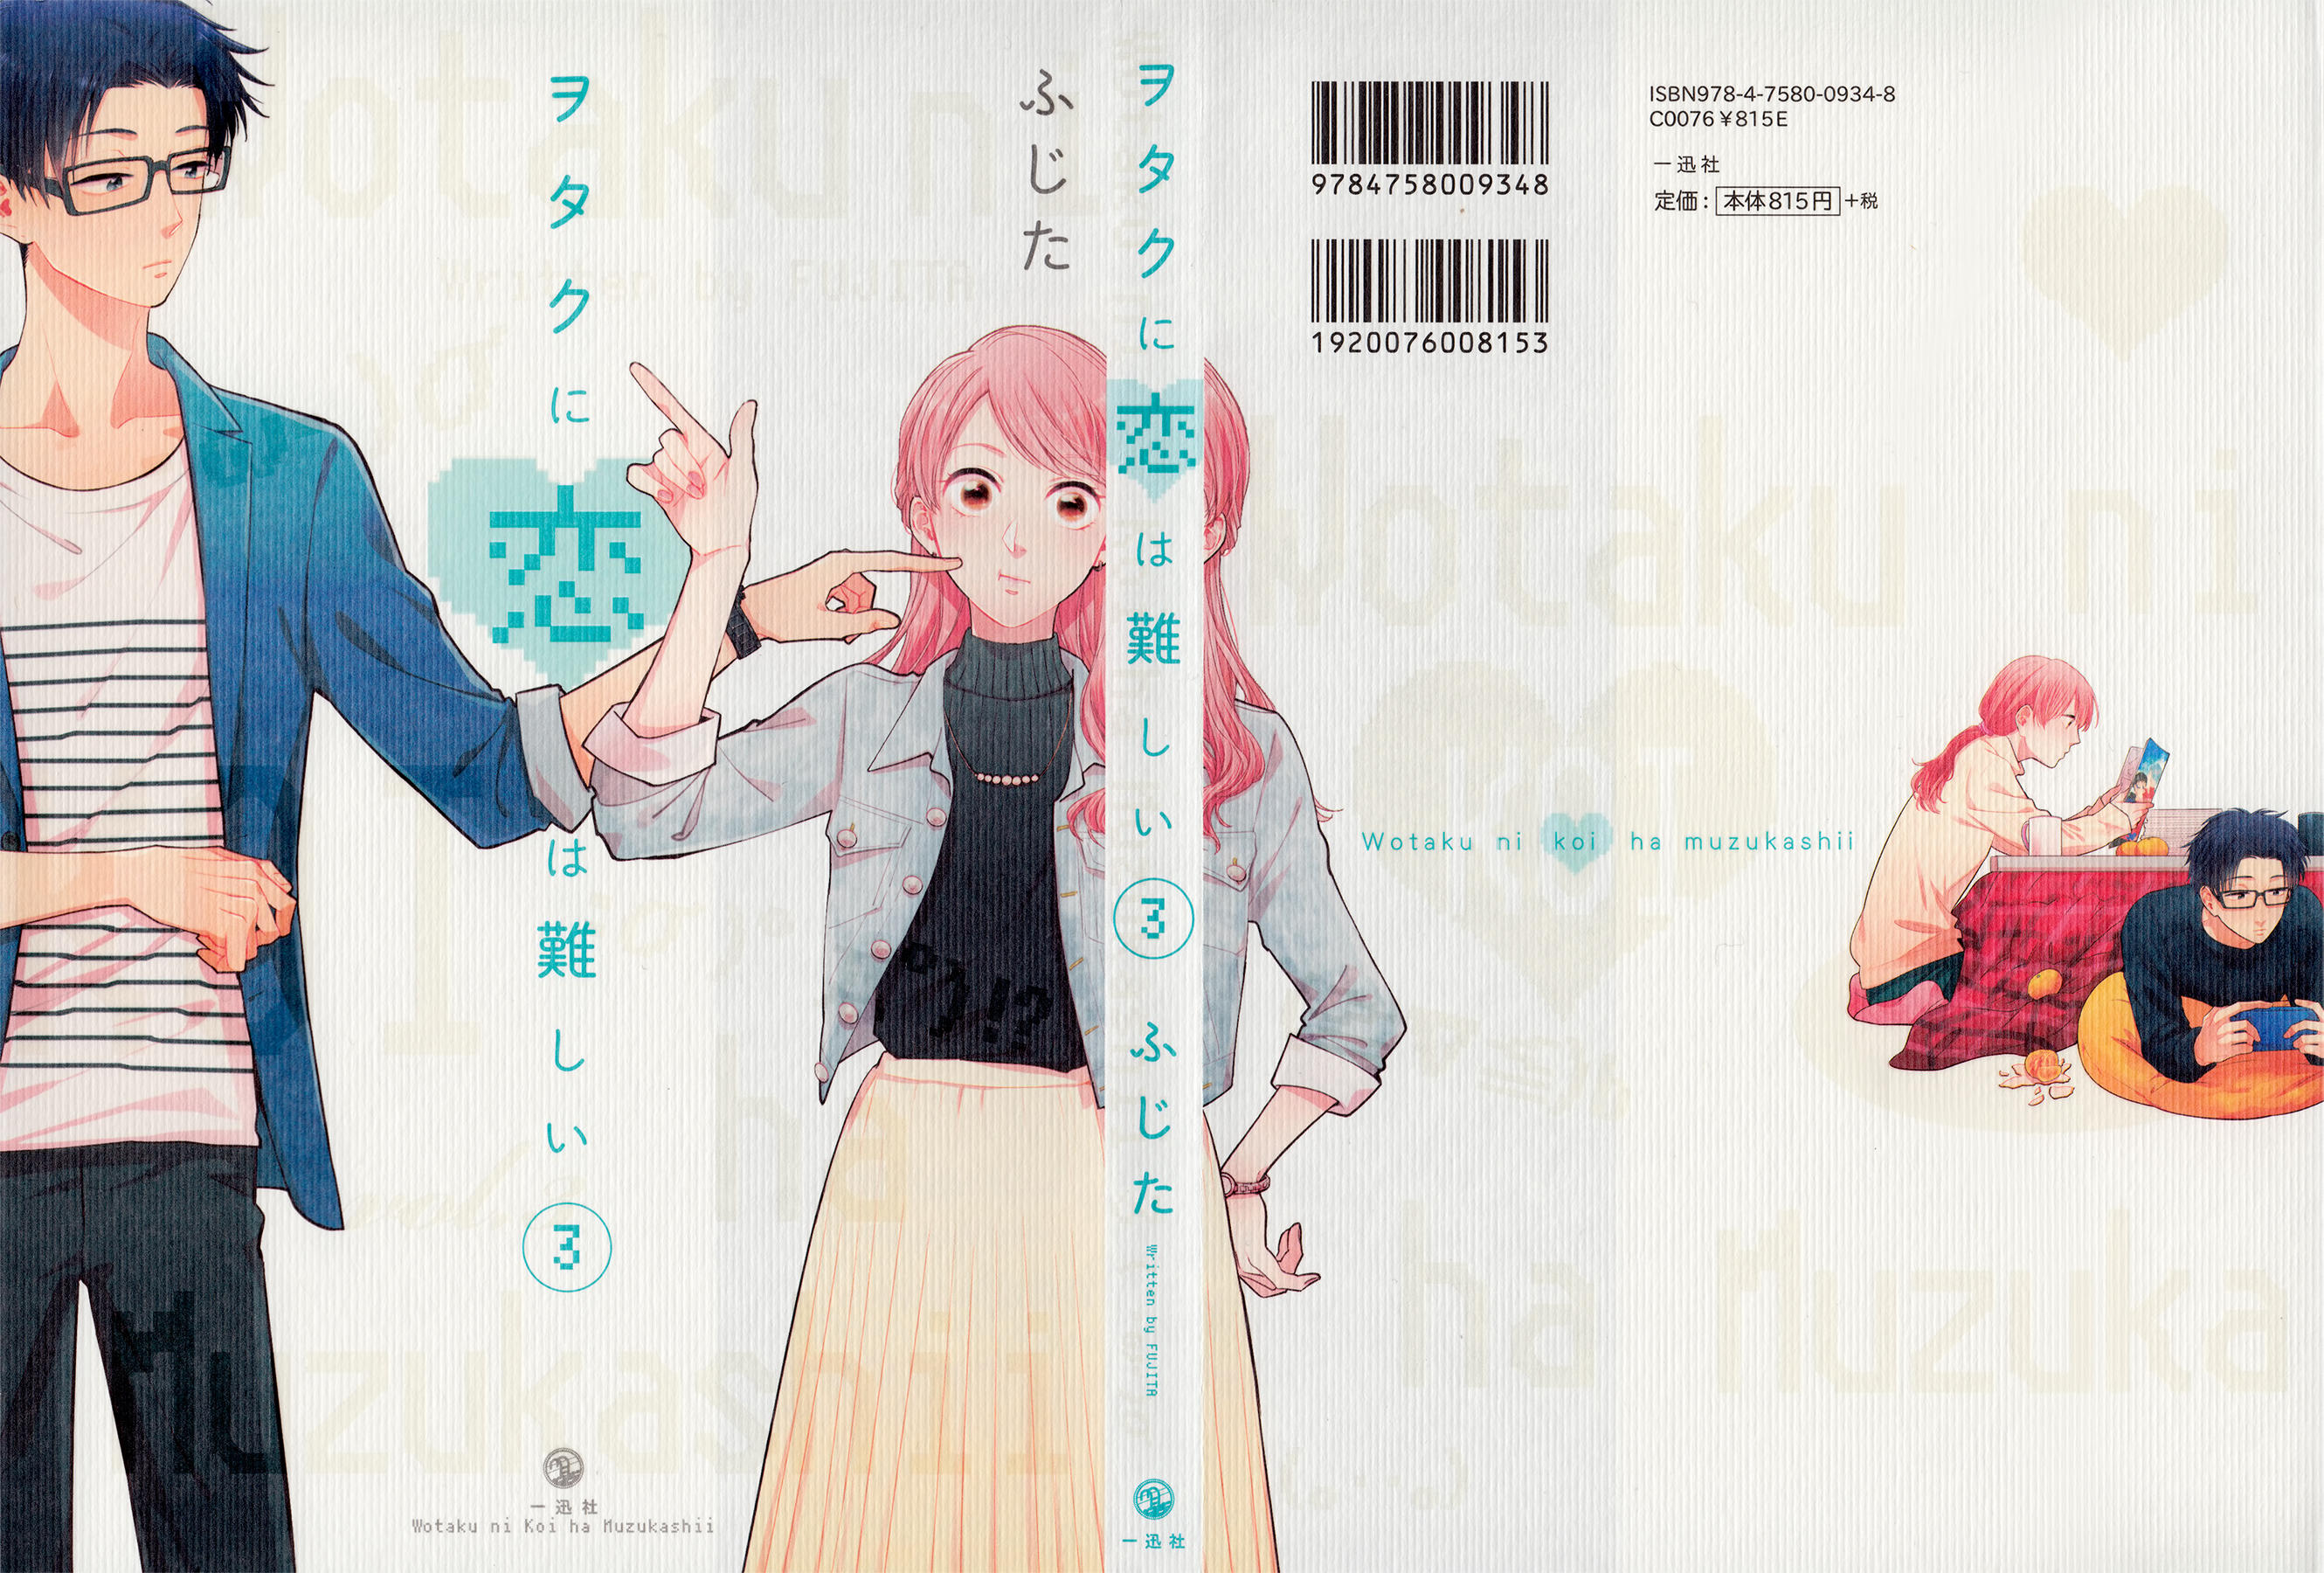 Wotaku ni Koi wa Muzukashii 36 - Read Wotaku ni Koi wa Muzukashii